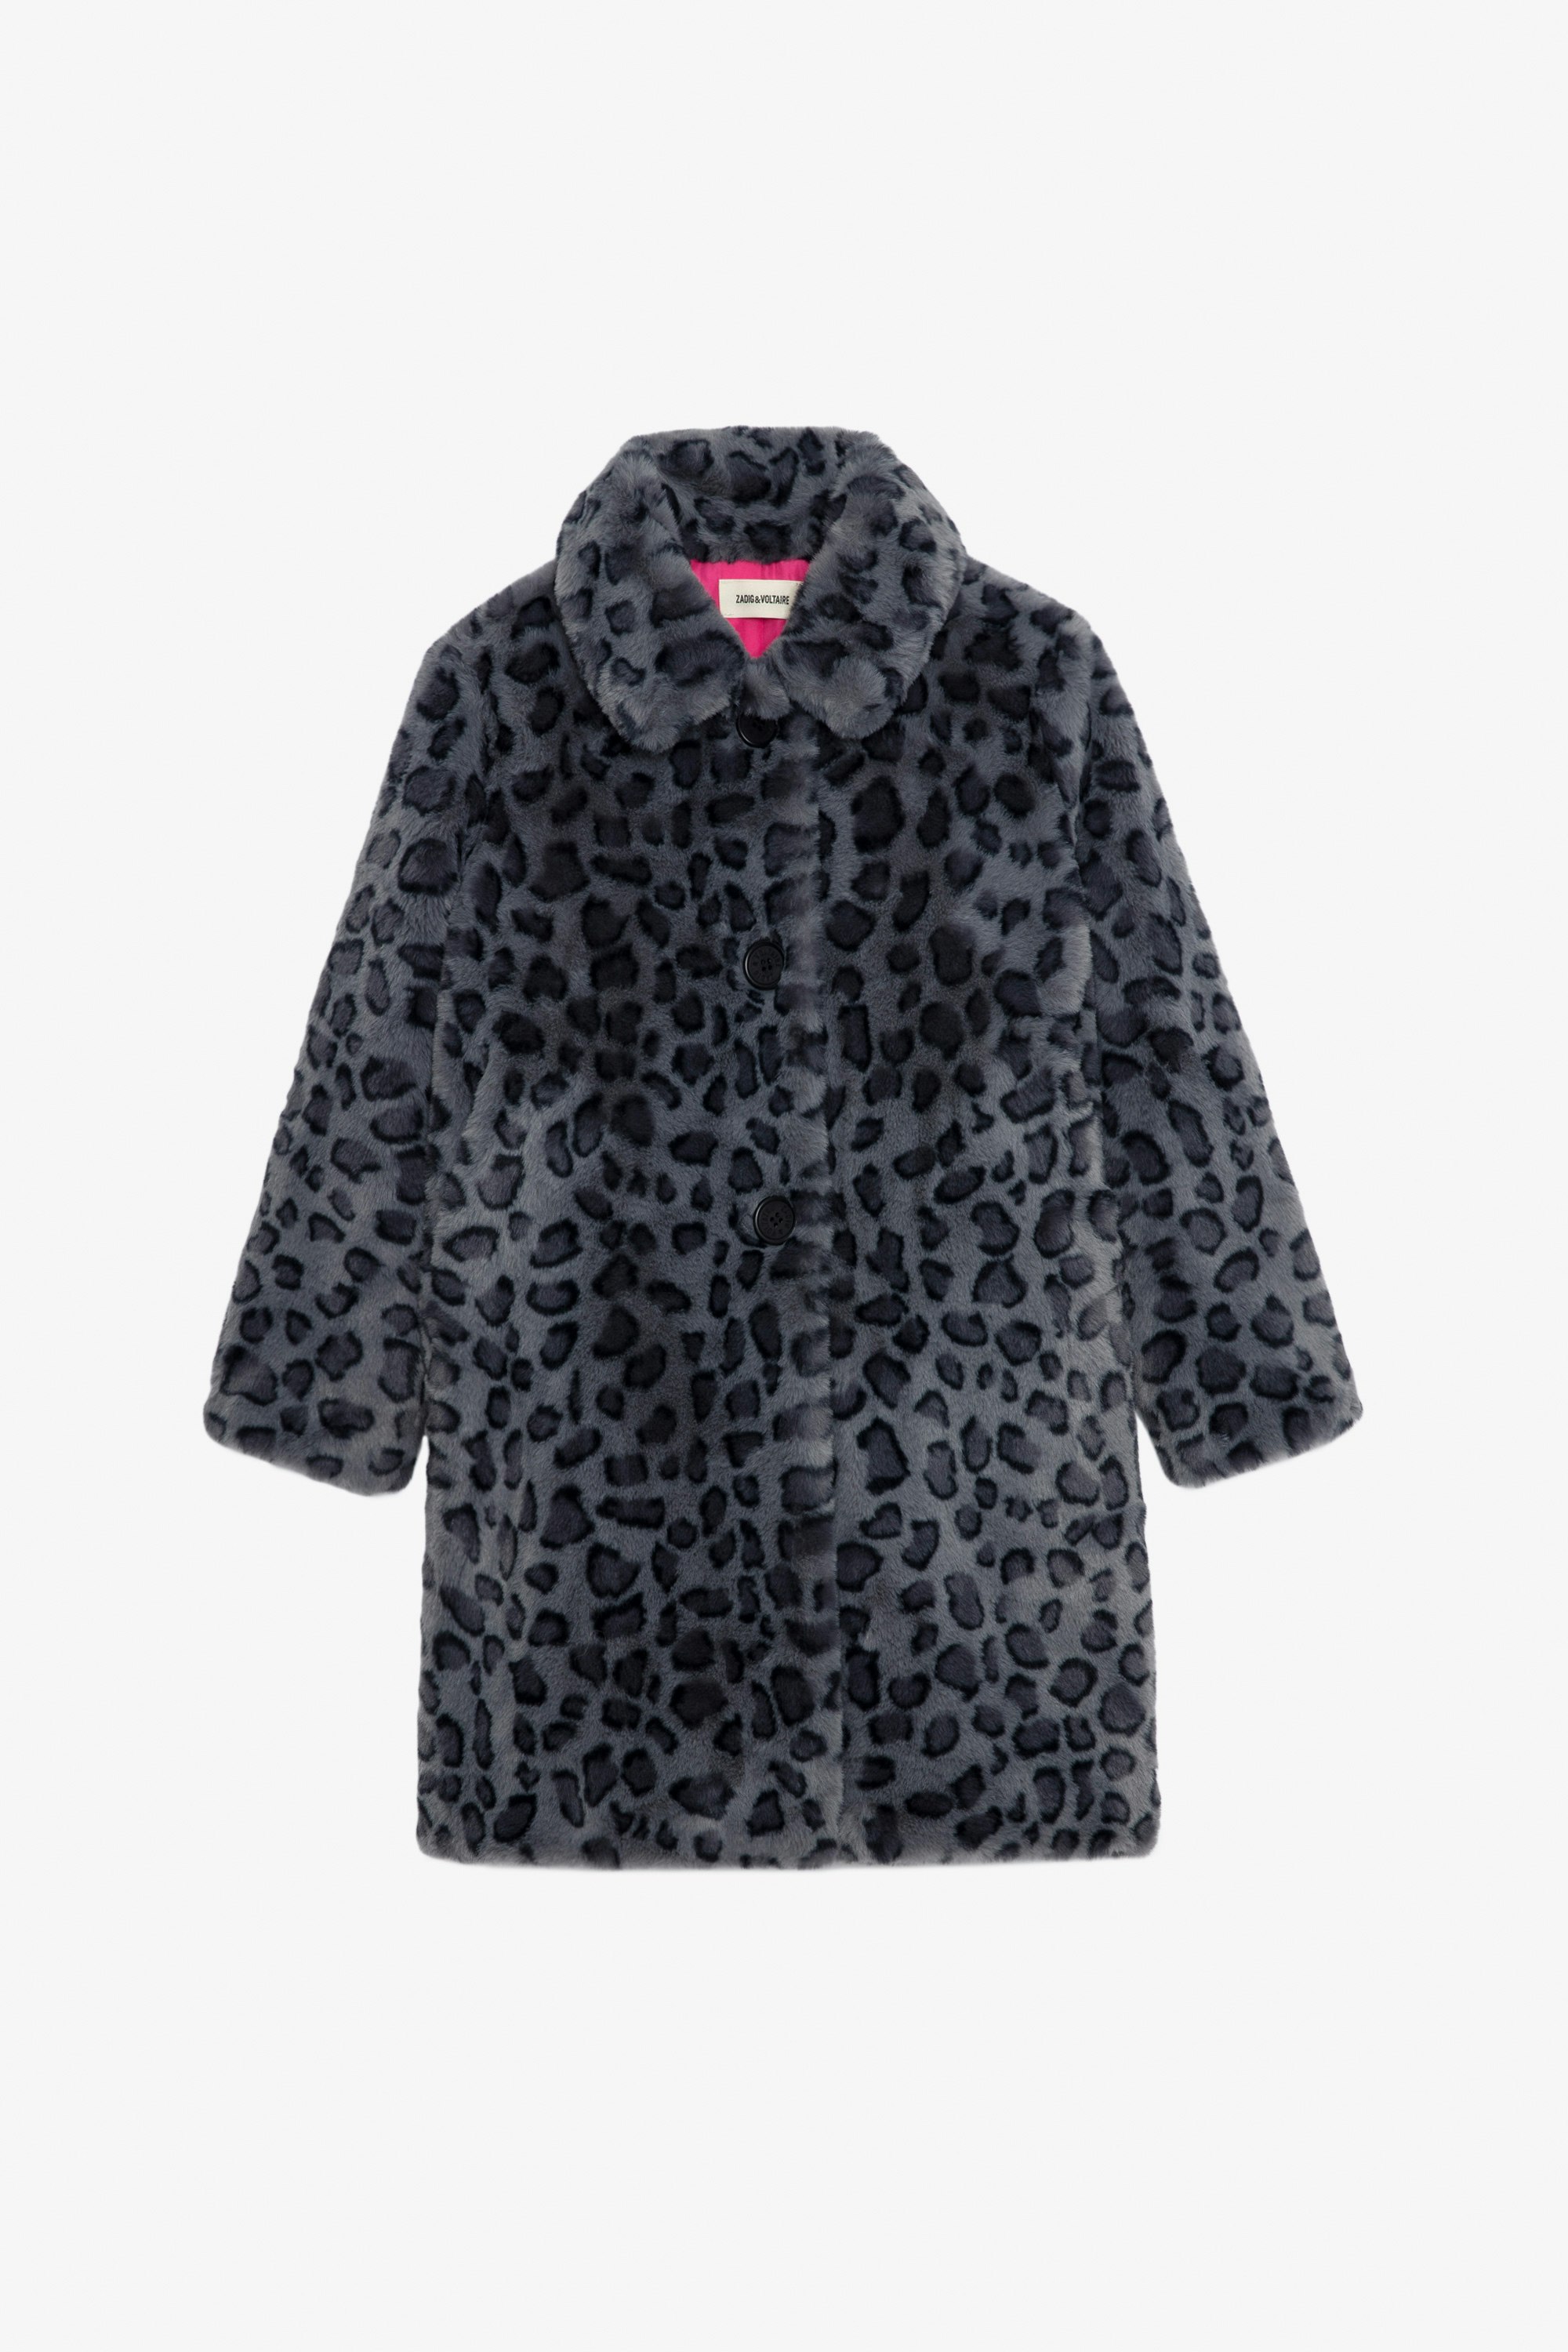 Abrigo Madeleine Niña - Abrigo negro de forro polar estampado de leopardo con forro en contraste para niña.